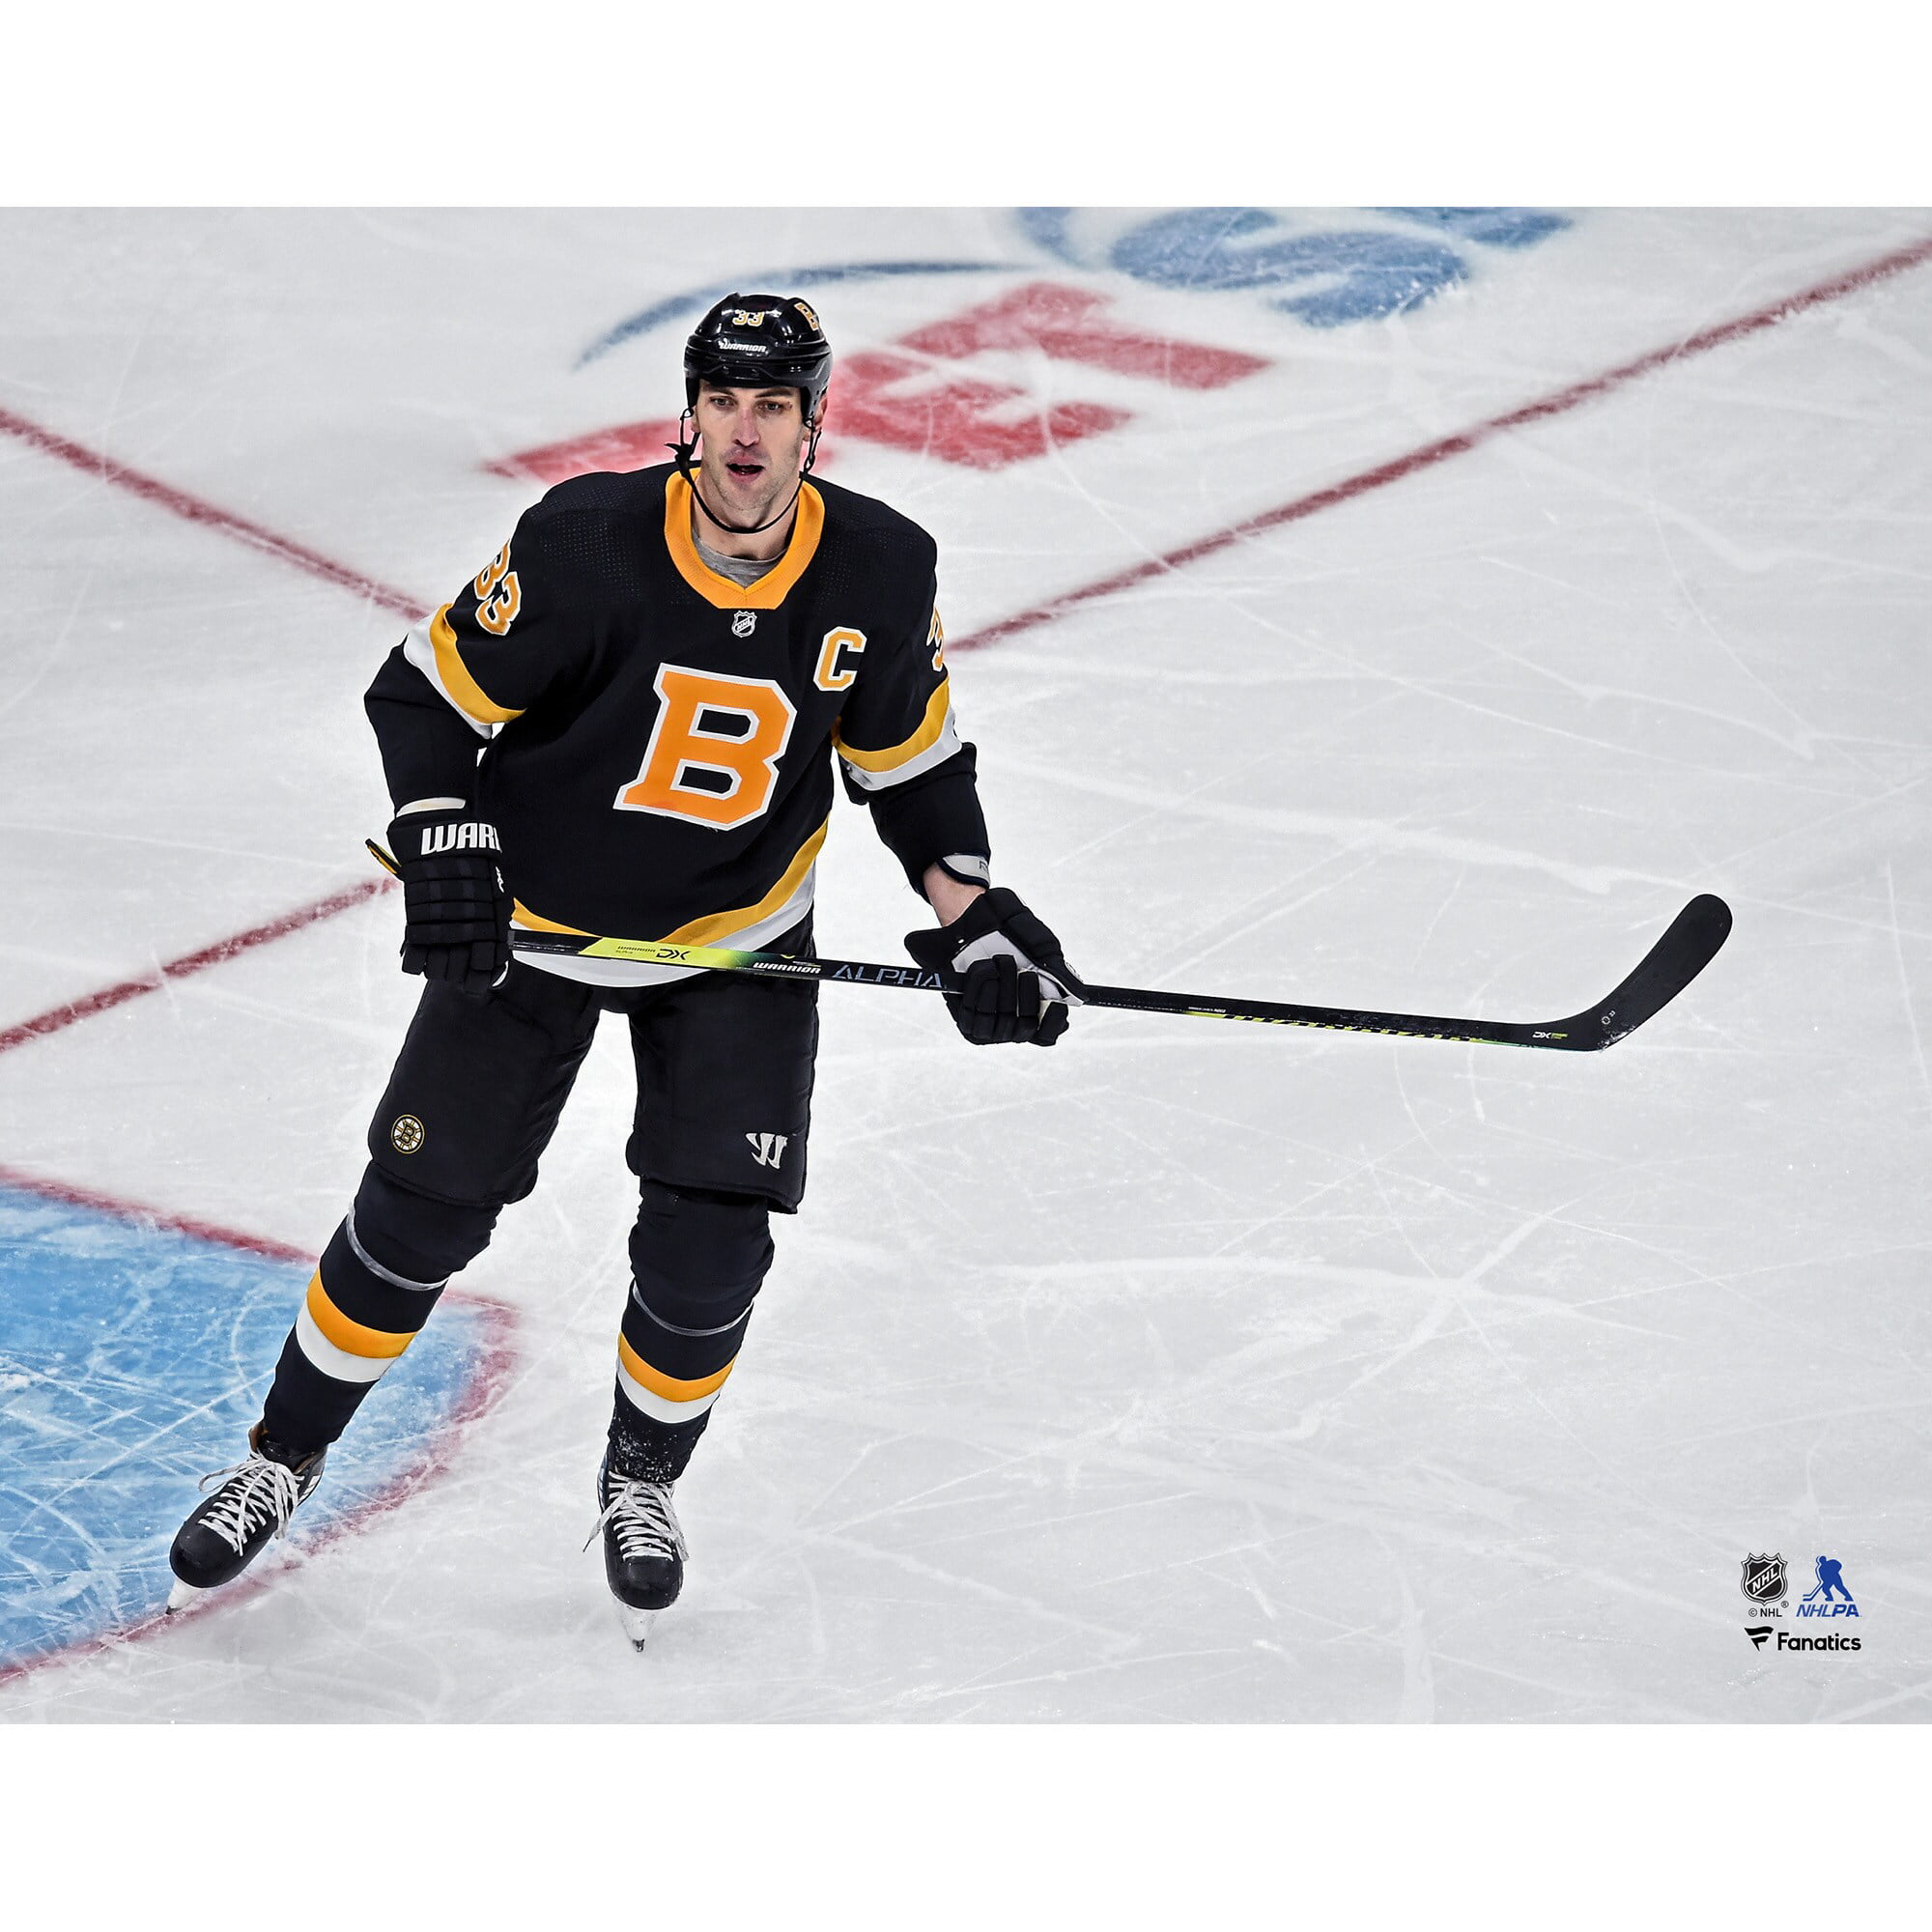 Zdeno Chara Boston Bruins Adidas Pro Autographed Jersey